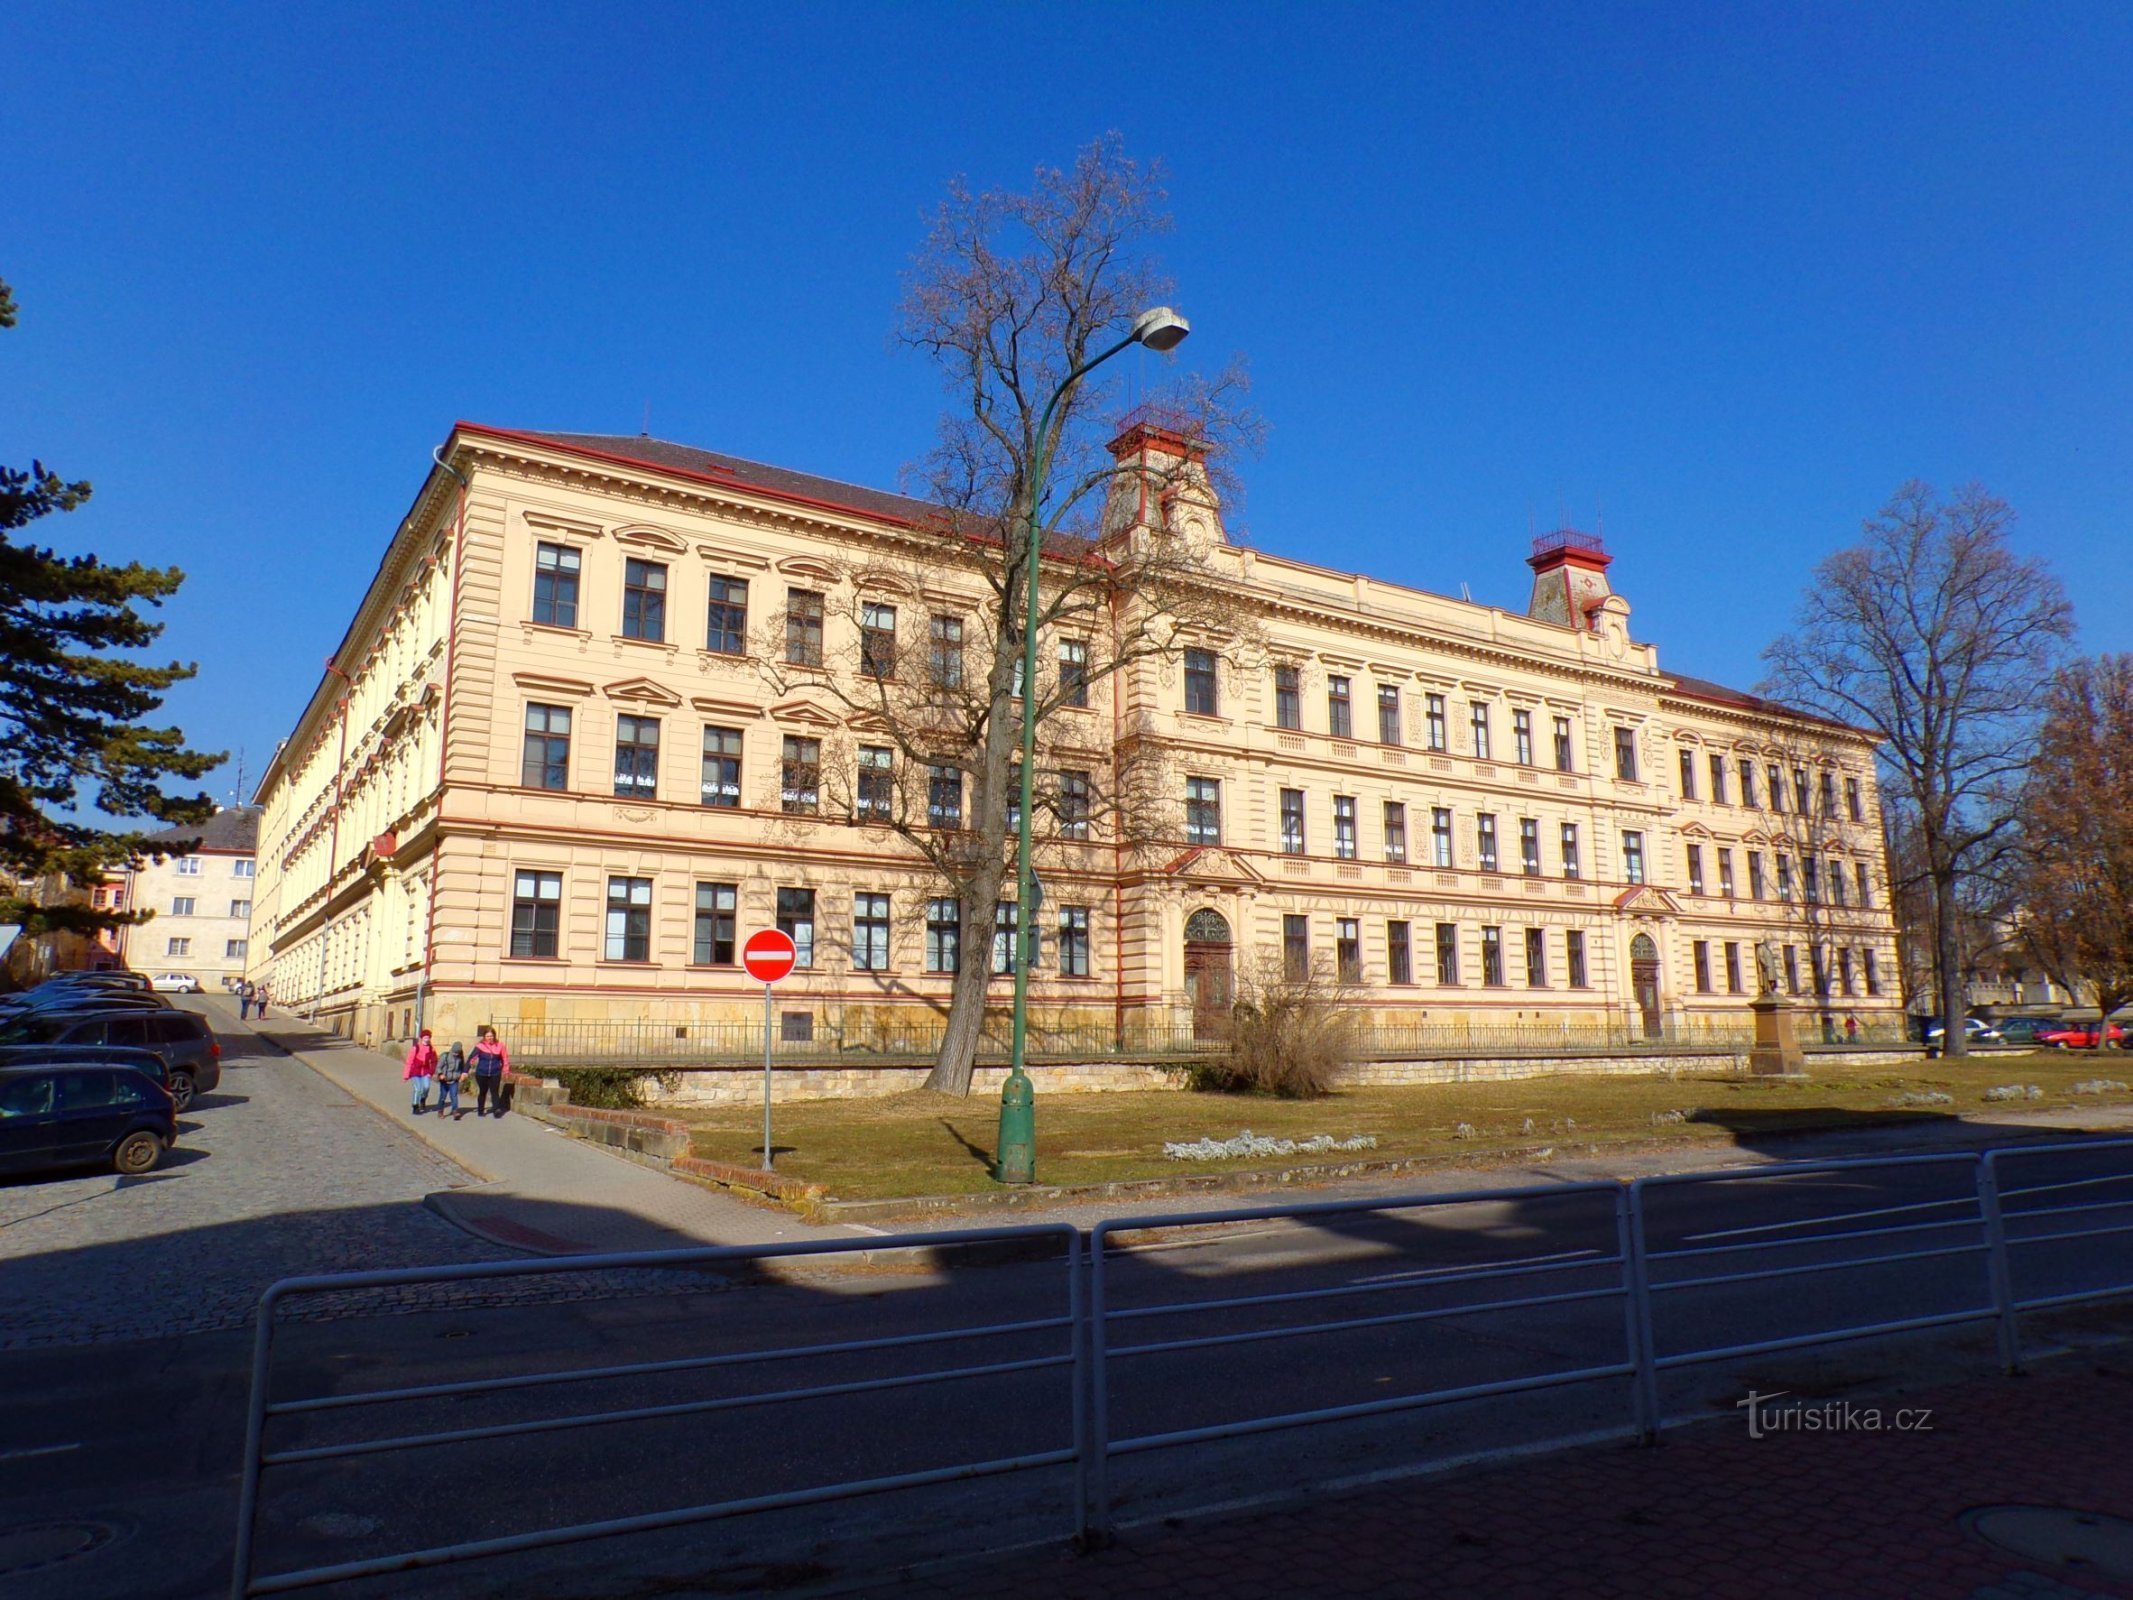 El edificio de la primera escuela primaria con el monumento a Jan Amos Comenius en primer plano (Jičín, 1/3.3.2022/XNUMX)